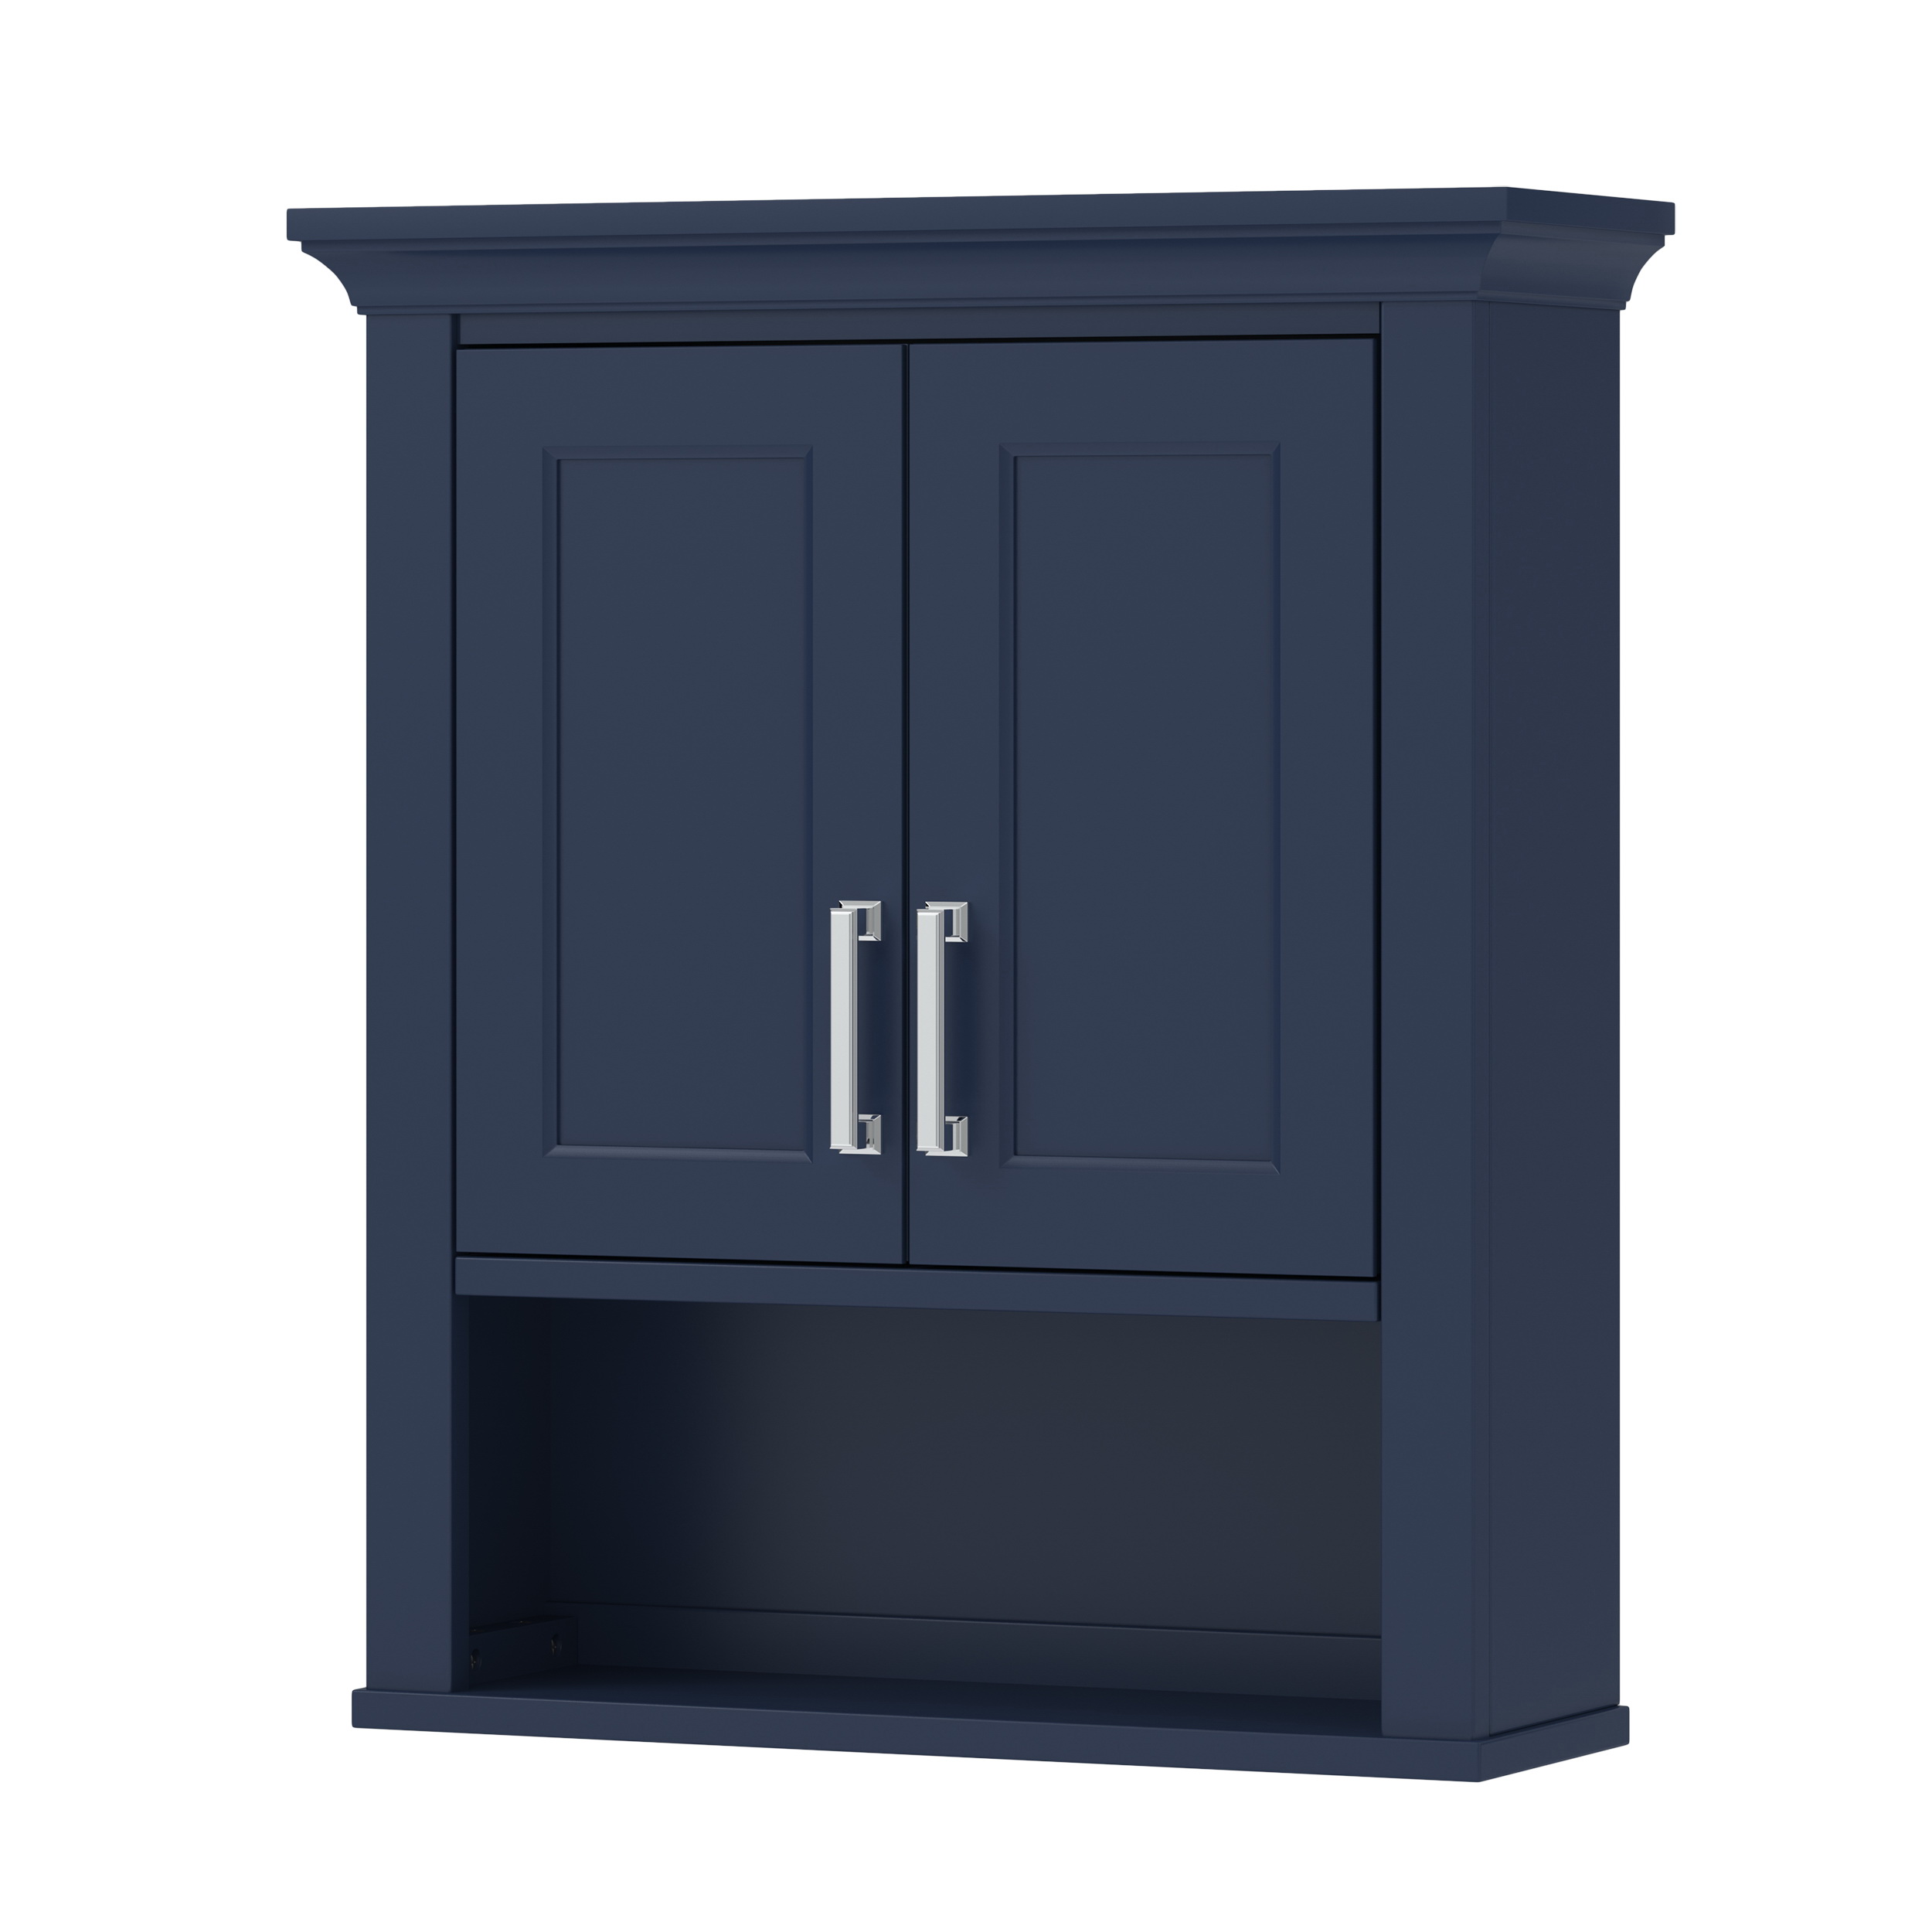 LSBW2428 Bathroom Cabinet, 2-Door, 1-Shelf, Wood, Aegean Blue